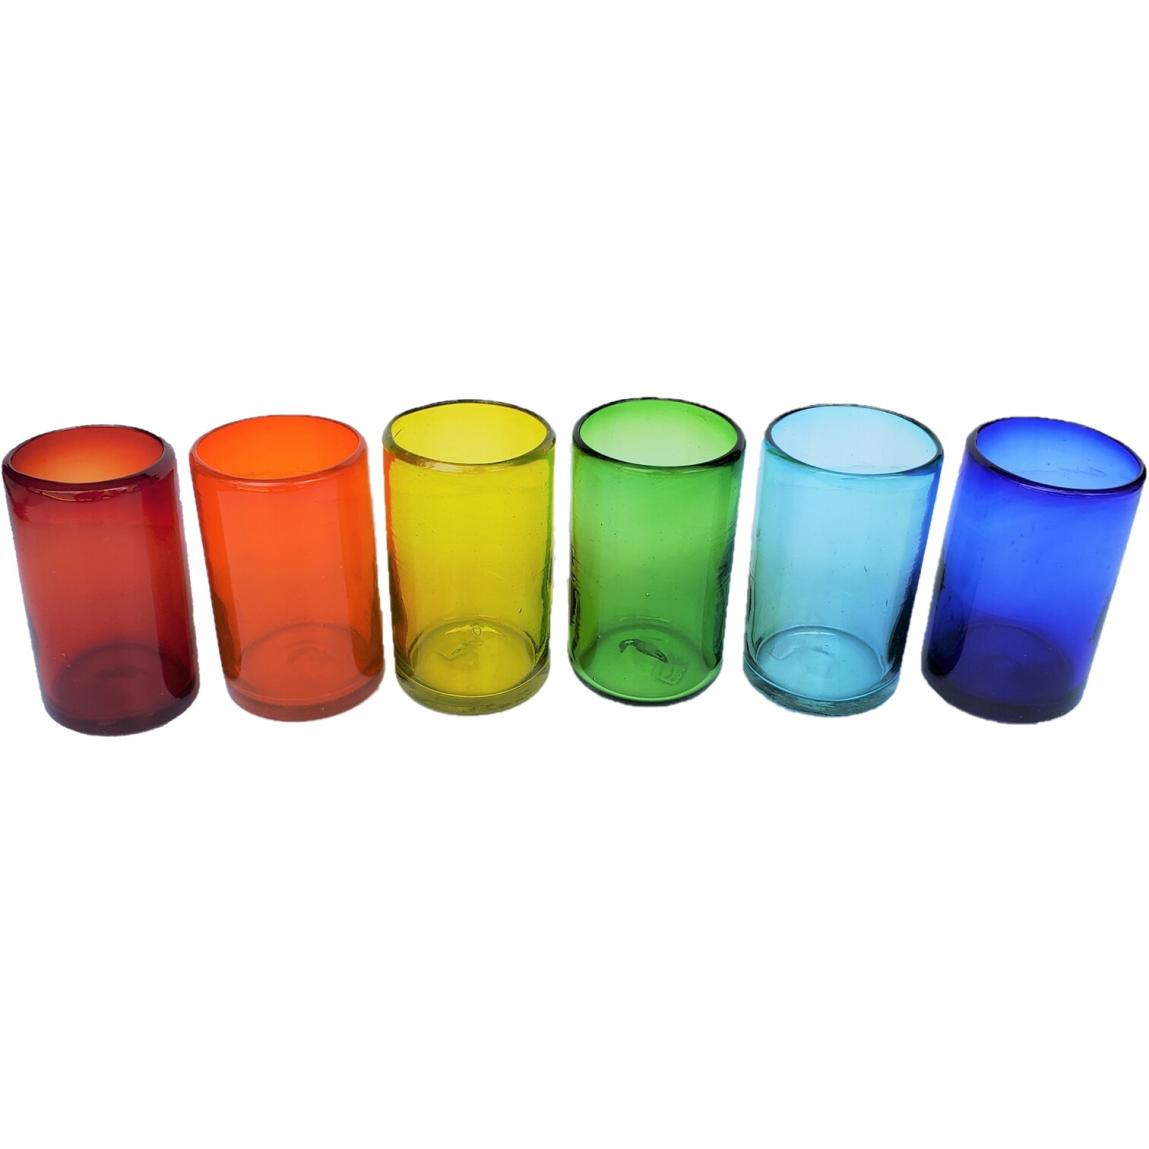 Novedades / Juego de 6 vasos grandes de colores Arcoris, 14 oz, Vidrio Reciclado, Libre de Plomo y Toxinas / stos artesanales vasos le darn un toque clsico a su bebida favorita.